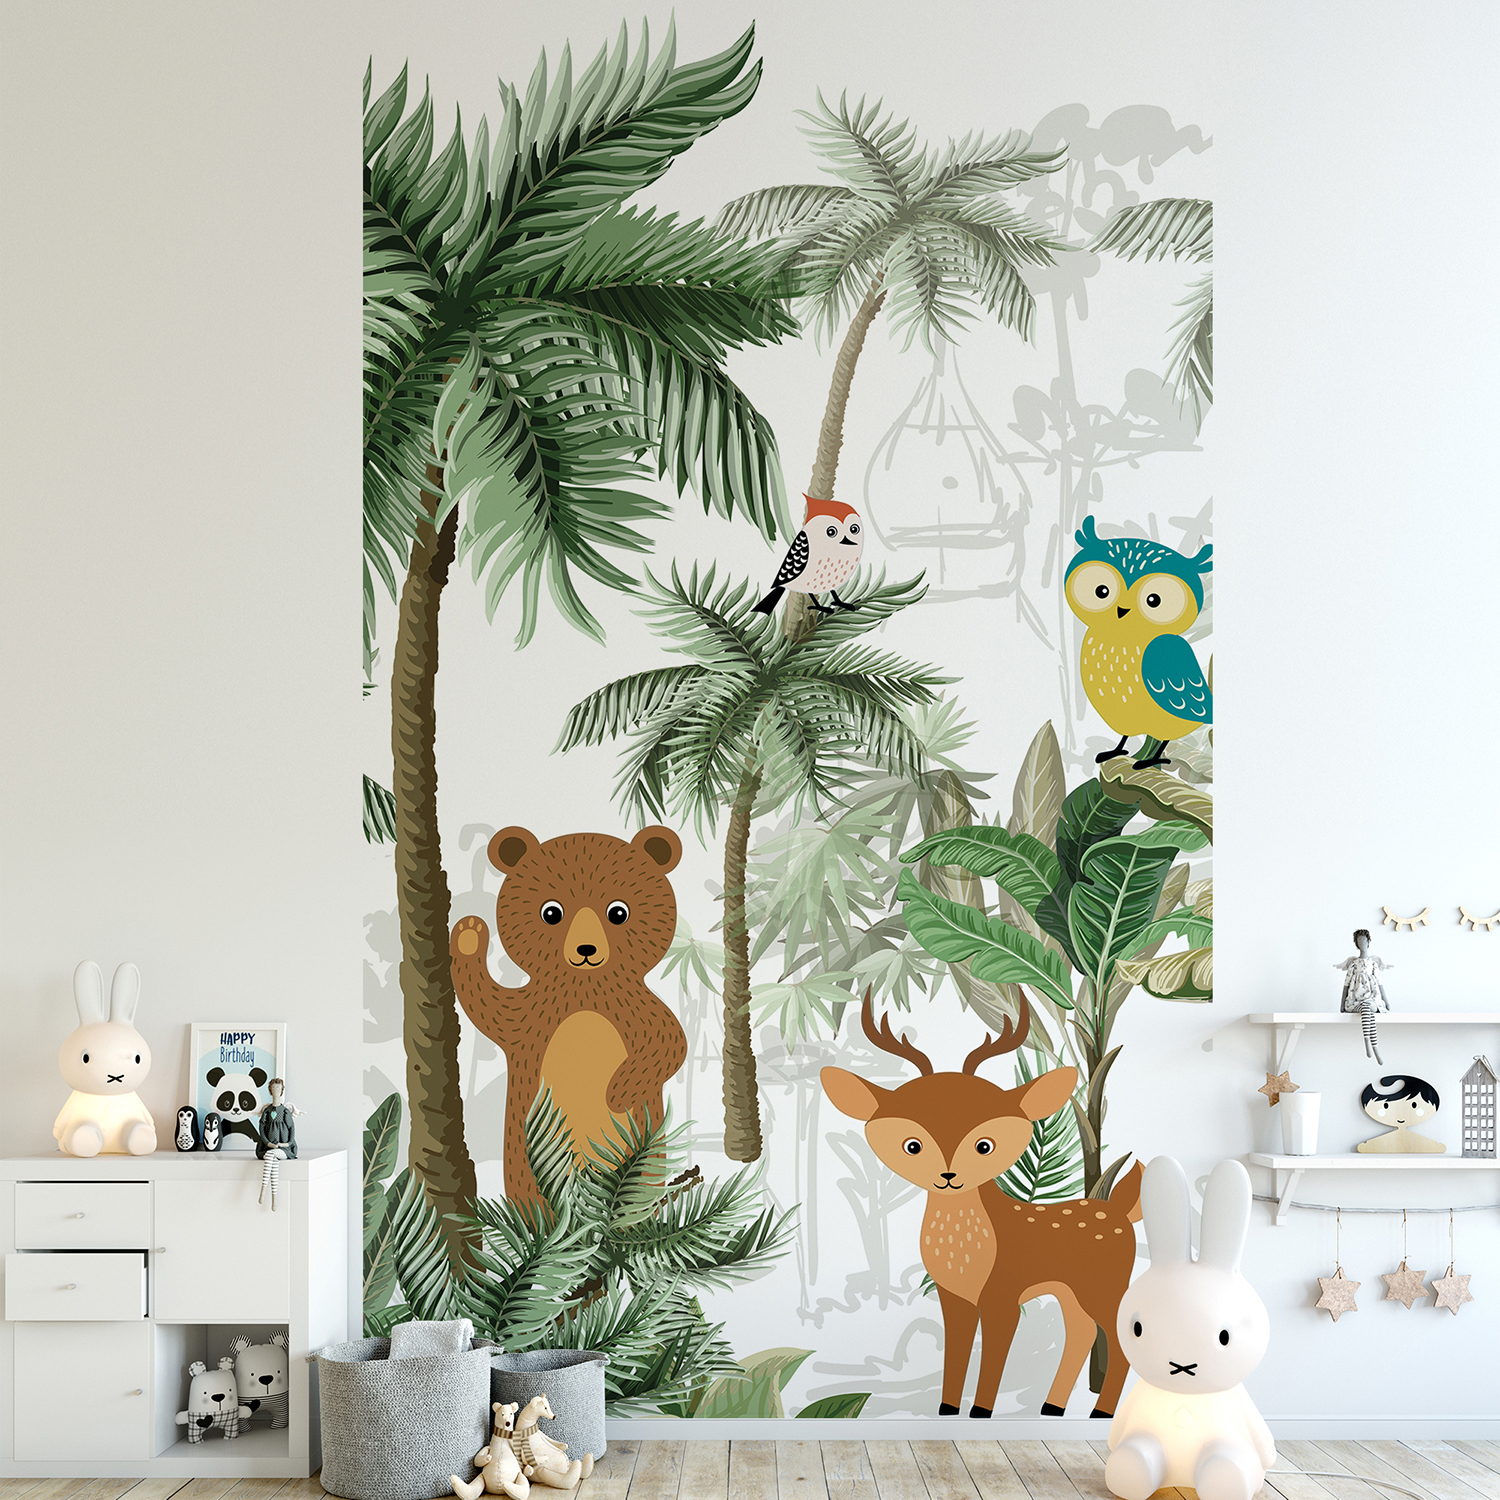 Papier intissé décoratif, customisation simple du mur d’une chambre pour enfant, illustration d’animaux africains, tigre, tigreau, girafe, singe et éléphant, couleurs marron vert et blanc, facile à entretenir.